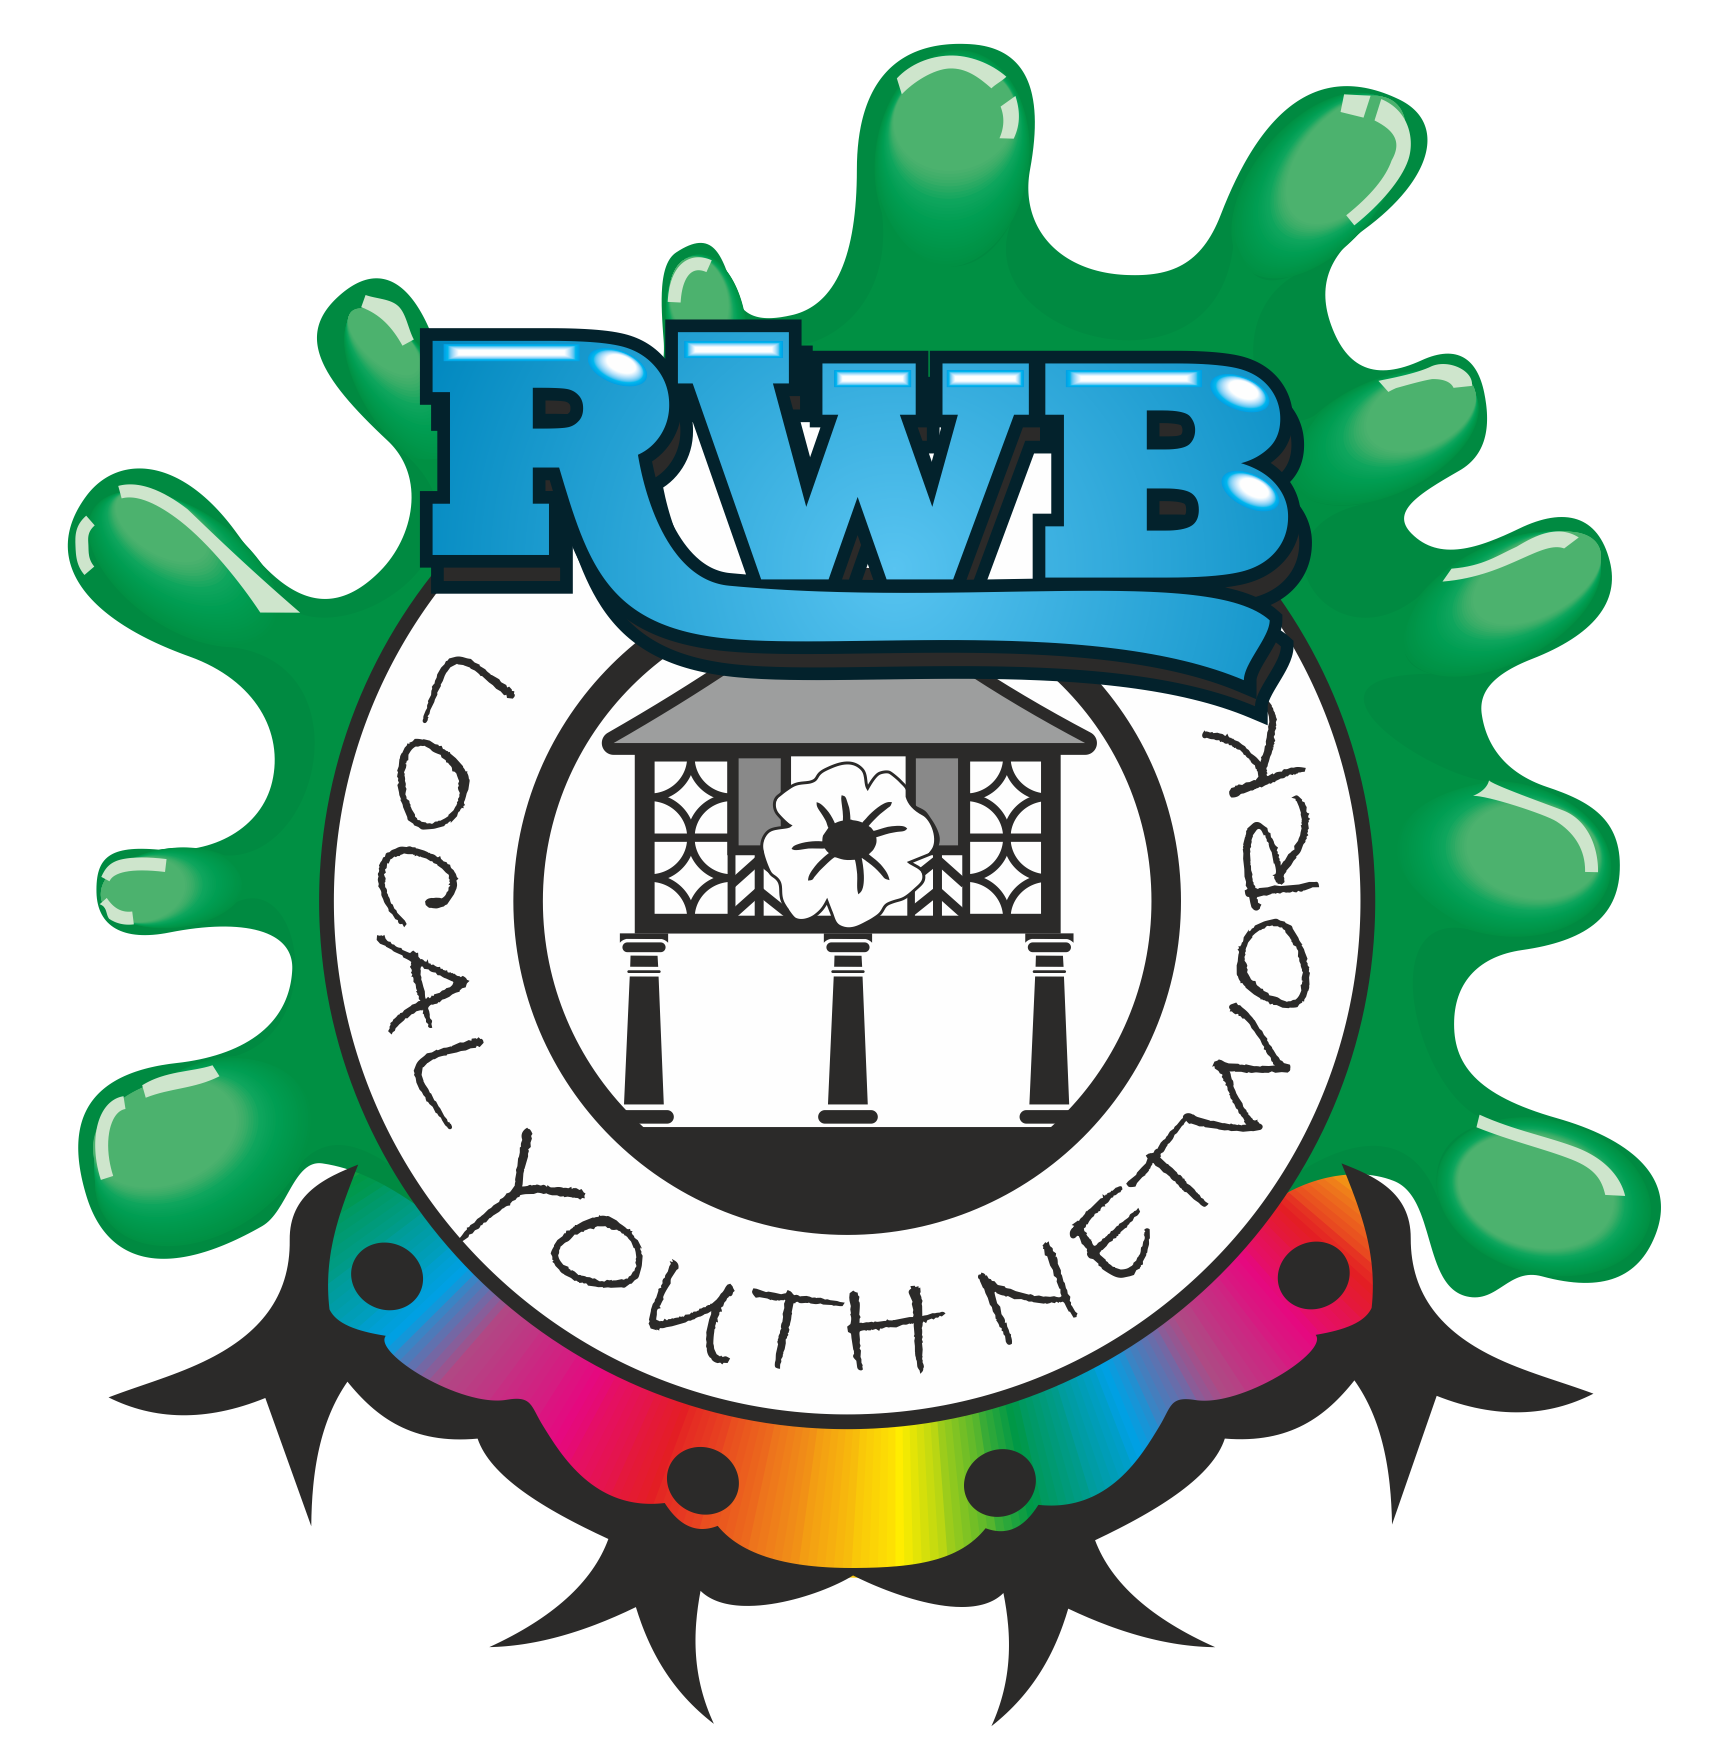 RWB Local Youth Network